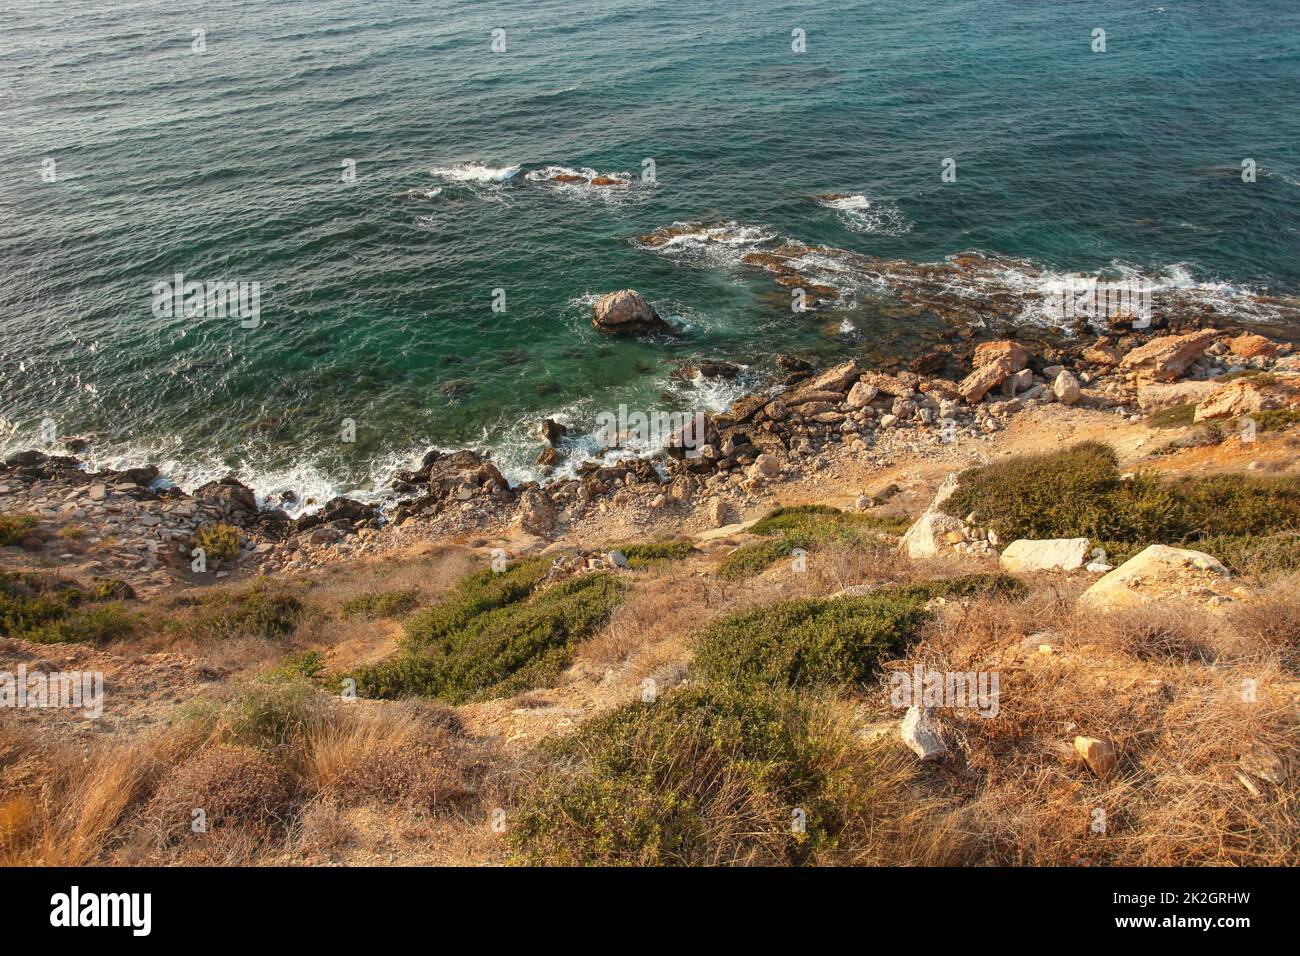 Vista dal mare ripida collina shore ricoperte di erba, rocce e mare blu profondo di acqua in background. Karpass, la parte settentrionale di Cipro Foto Stock